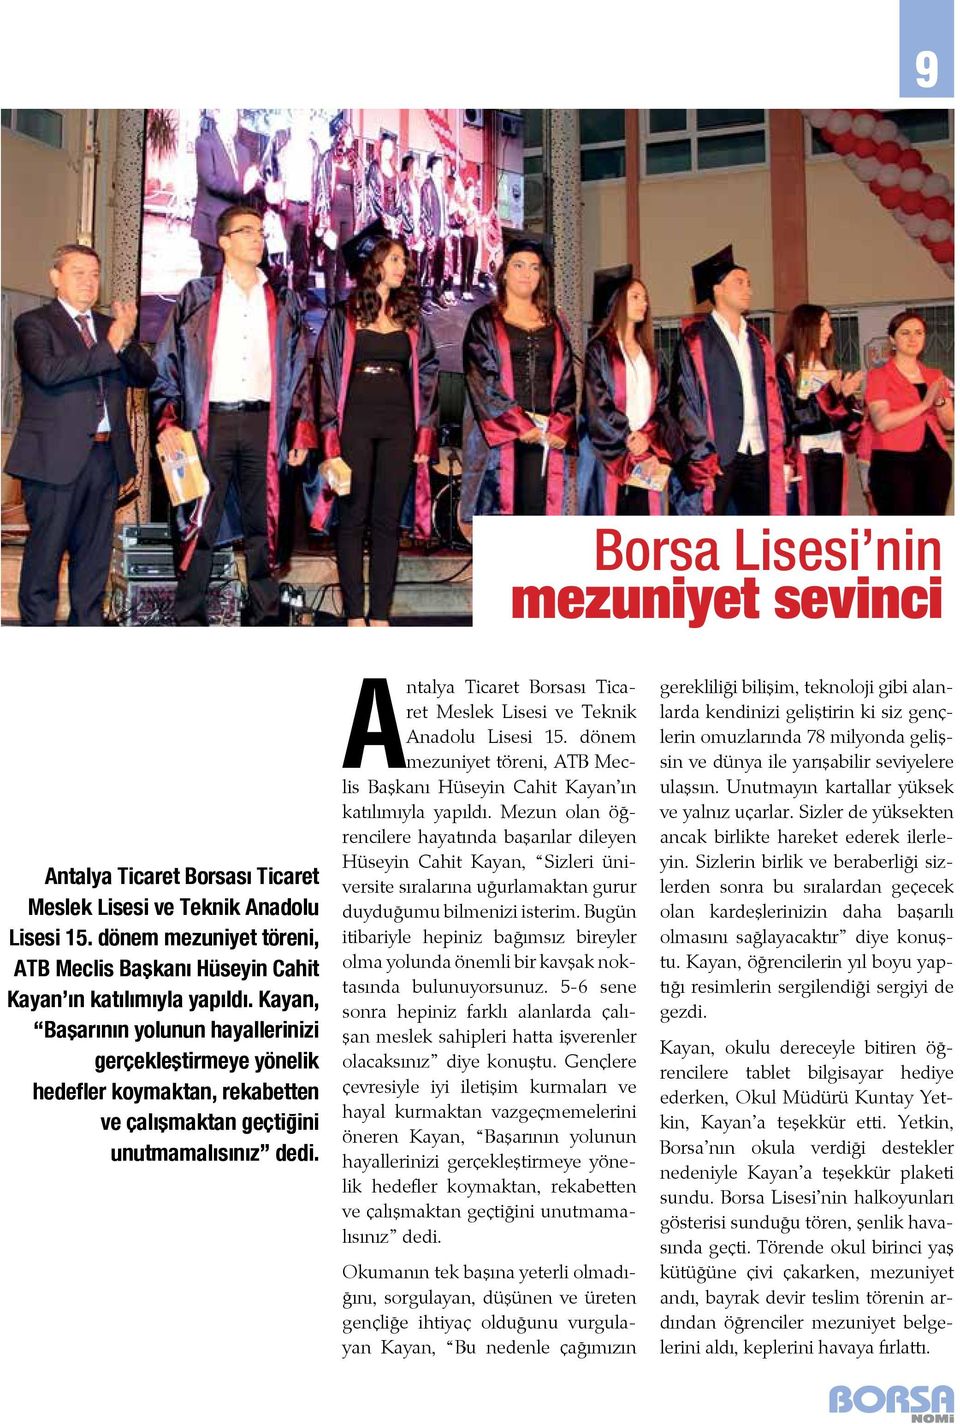 Antalya Ticaret Borsası Ticaret Meslek Lisesi ve Teknik Anadolu Lisesi 15. dönem mezuniyet töreni, ATB Meclis Başkanı Hüseyin Cahit Kayan ın katılımıyla yapıldı.